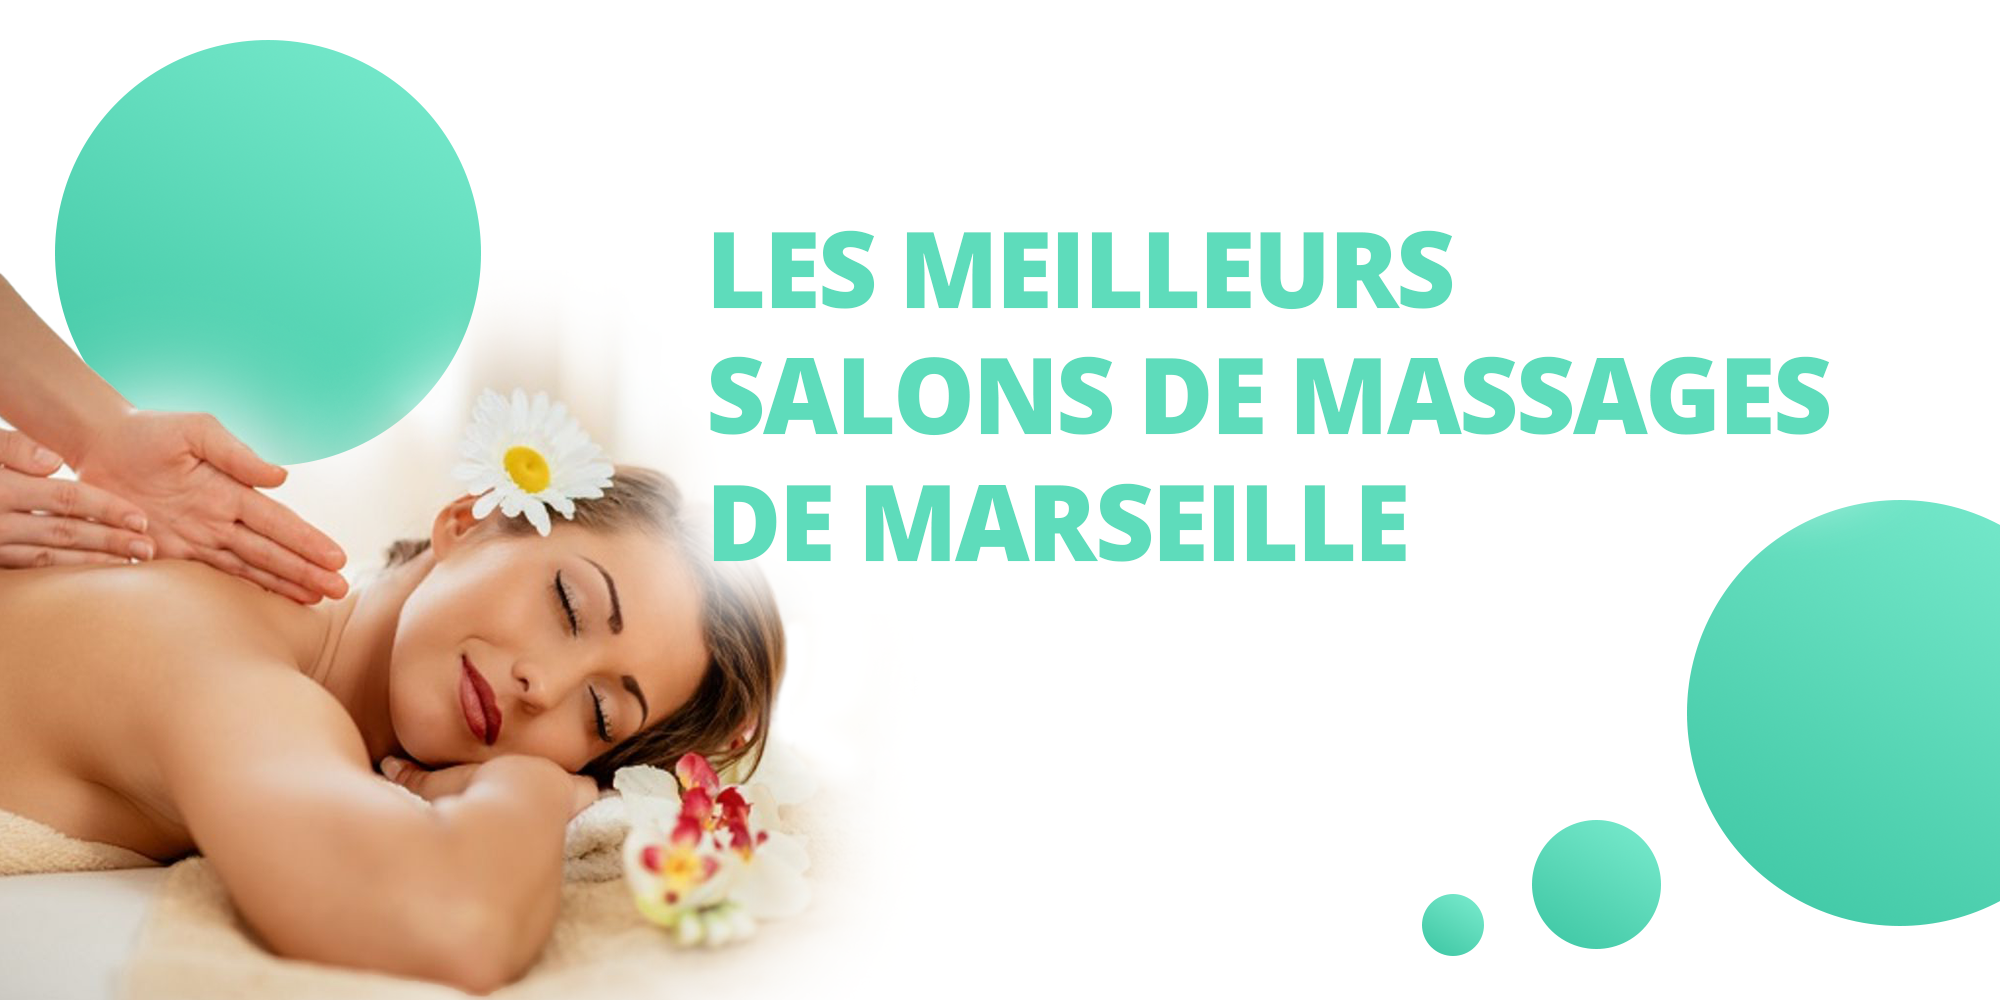 Les meilleurs salons de massages de Marseille